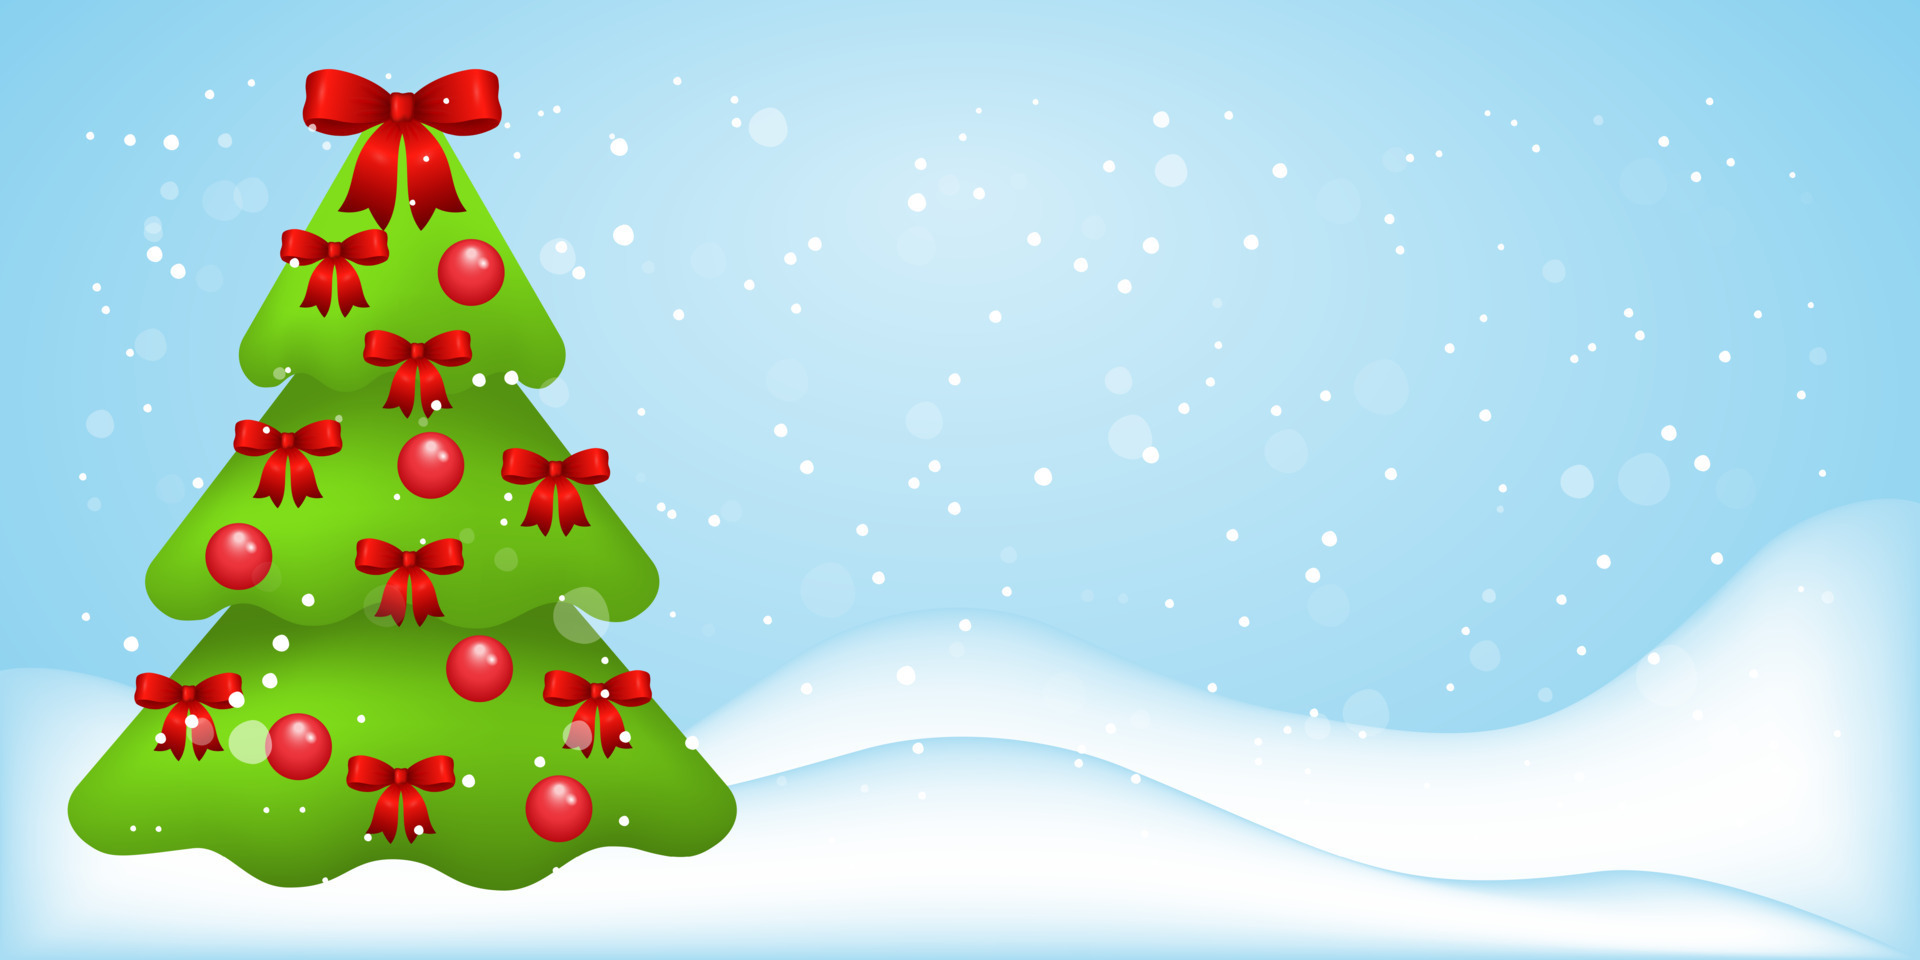 Giáng sinh năm nay sẽ tràn ngập ánh sáng và màu sắc! Hãy cùng đón nhận nền ánh sáng Noel 2021 với cây thông và trang trí đầy tươi vui. Hãy cảm nhận không khí lễ hội và sự háo hức trong mỗi khoảnh khắc cùng hình ảnh đẹp nhất từ nền ánh sáng Noel